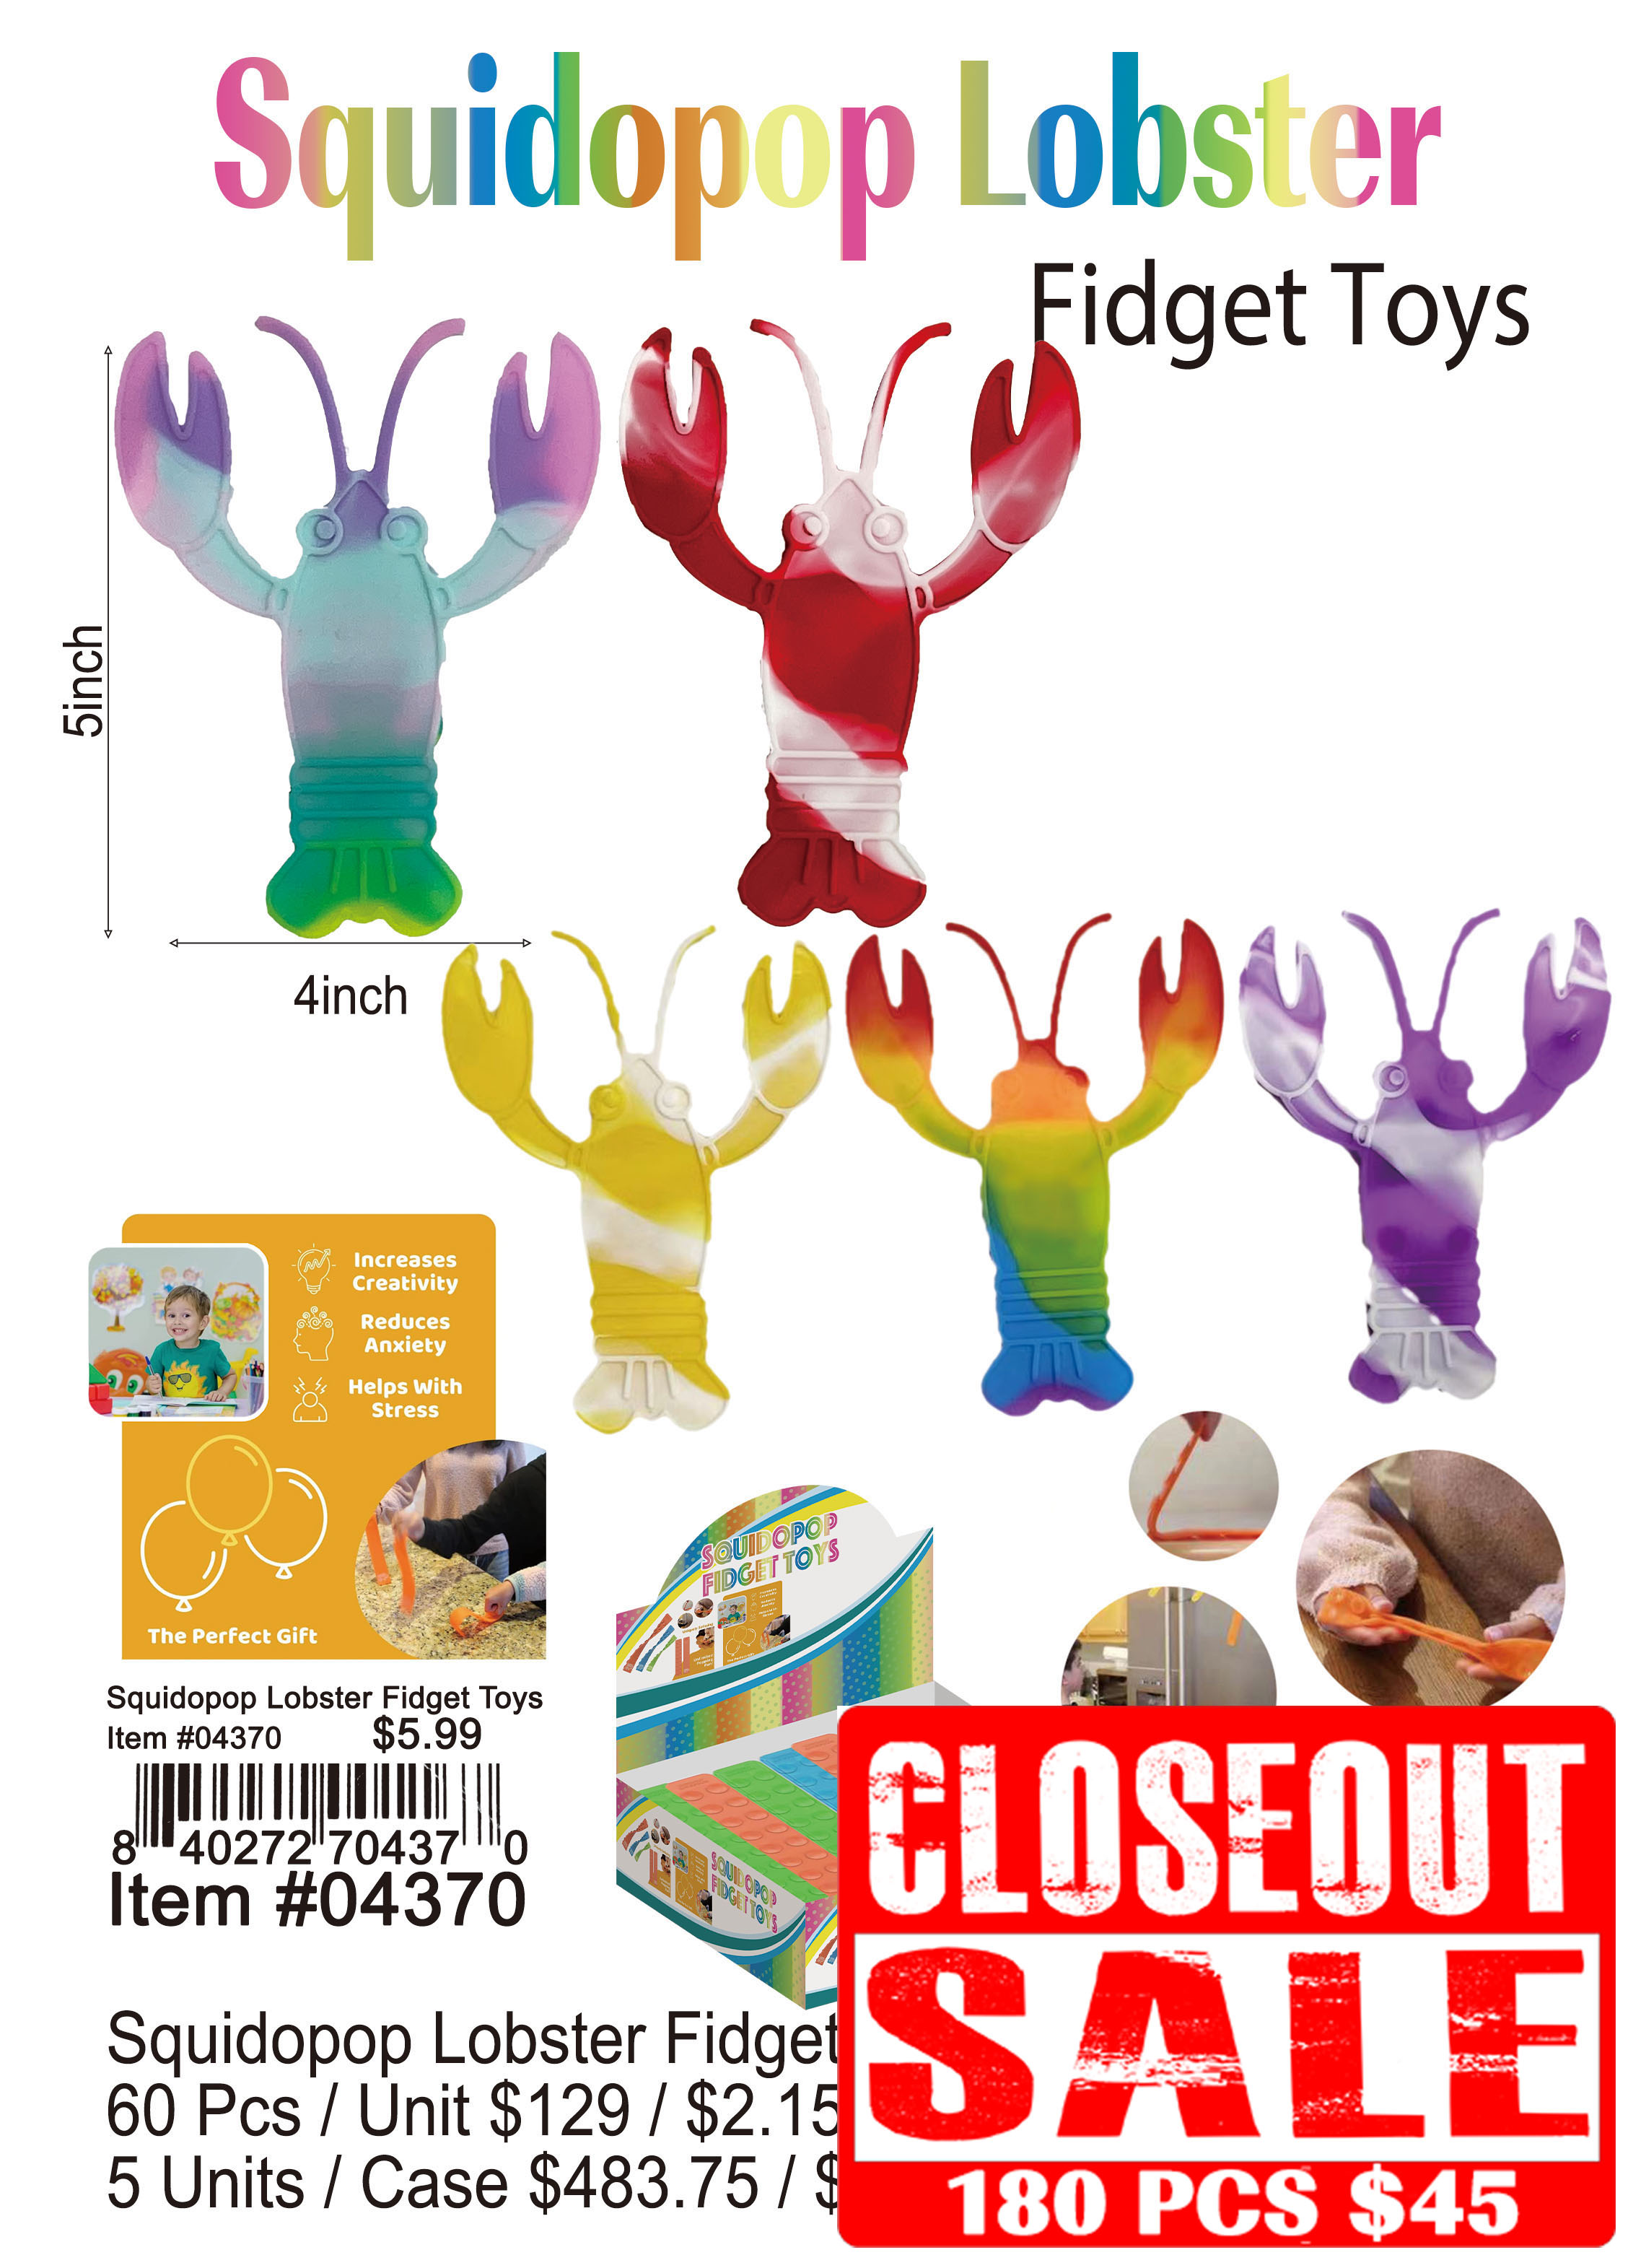 Squidopop Lobster Fidget Toys